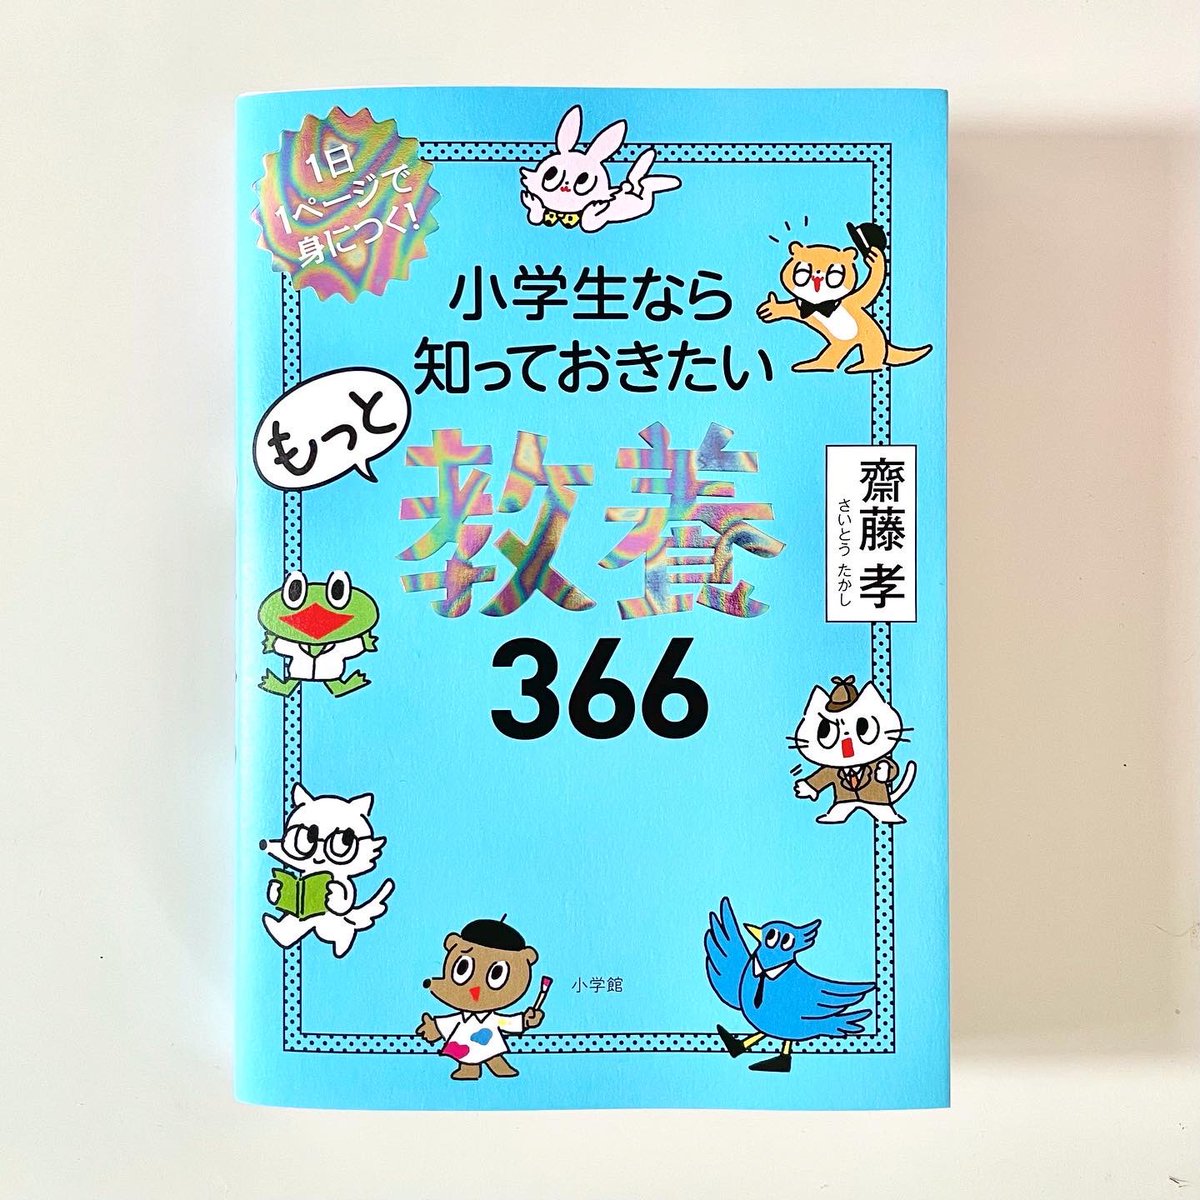 とあこ 小学生なら知っておきたい もっと 教養366 斉藤孝 著 小学館 昨年発売された本に続き キャラクターイラストと4コマ漫画かいてます しかも今回はシール付き 小学生のみならず大人が読んでもおもしろいのでぜひ